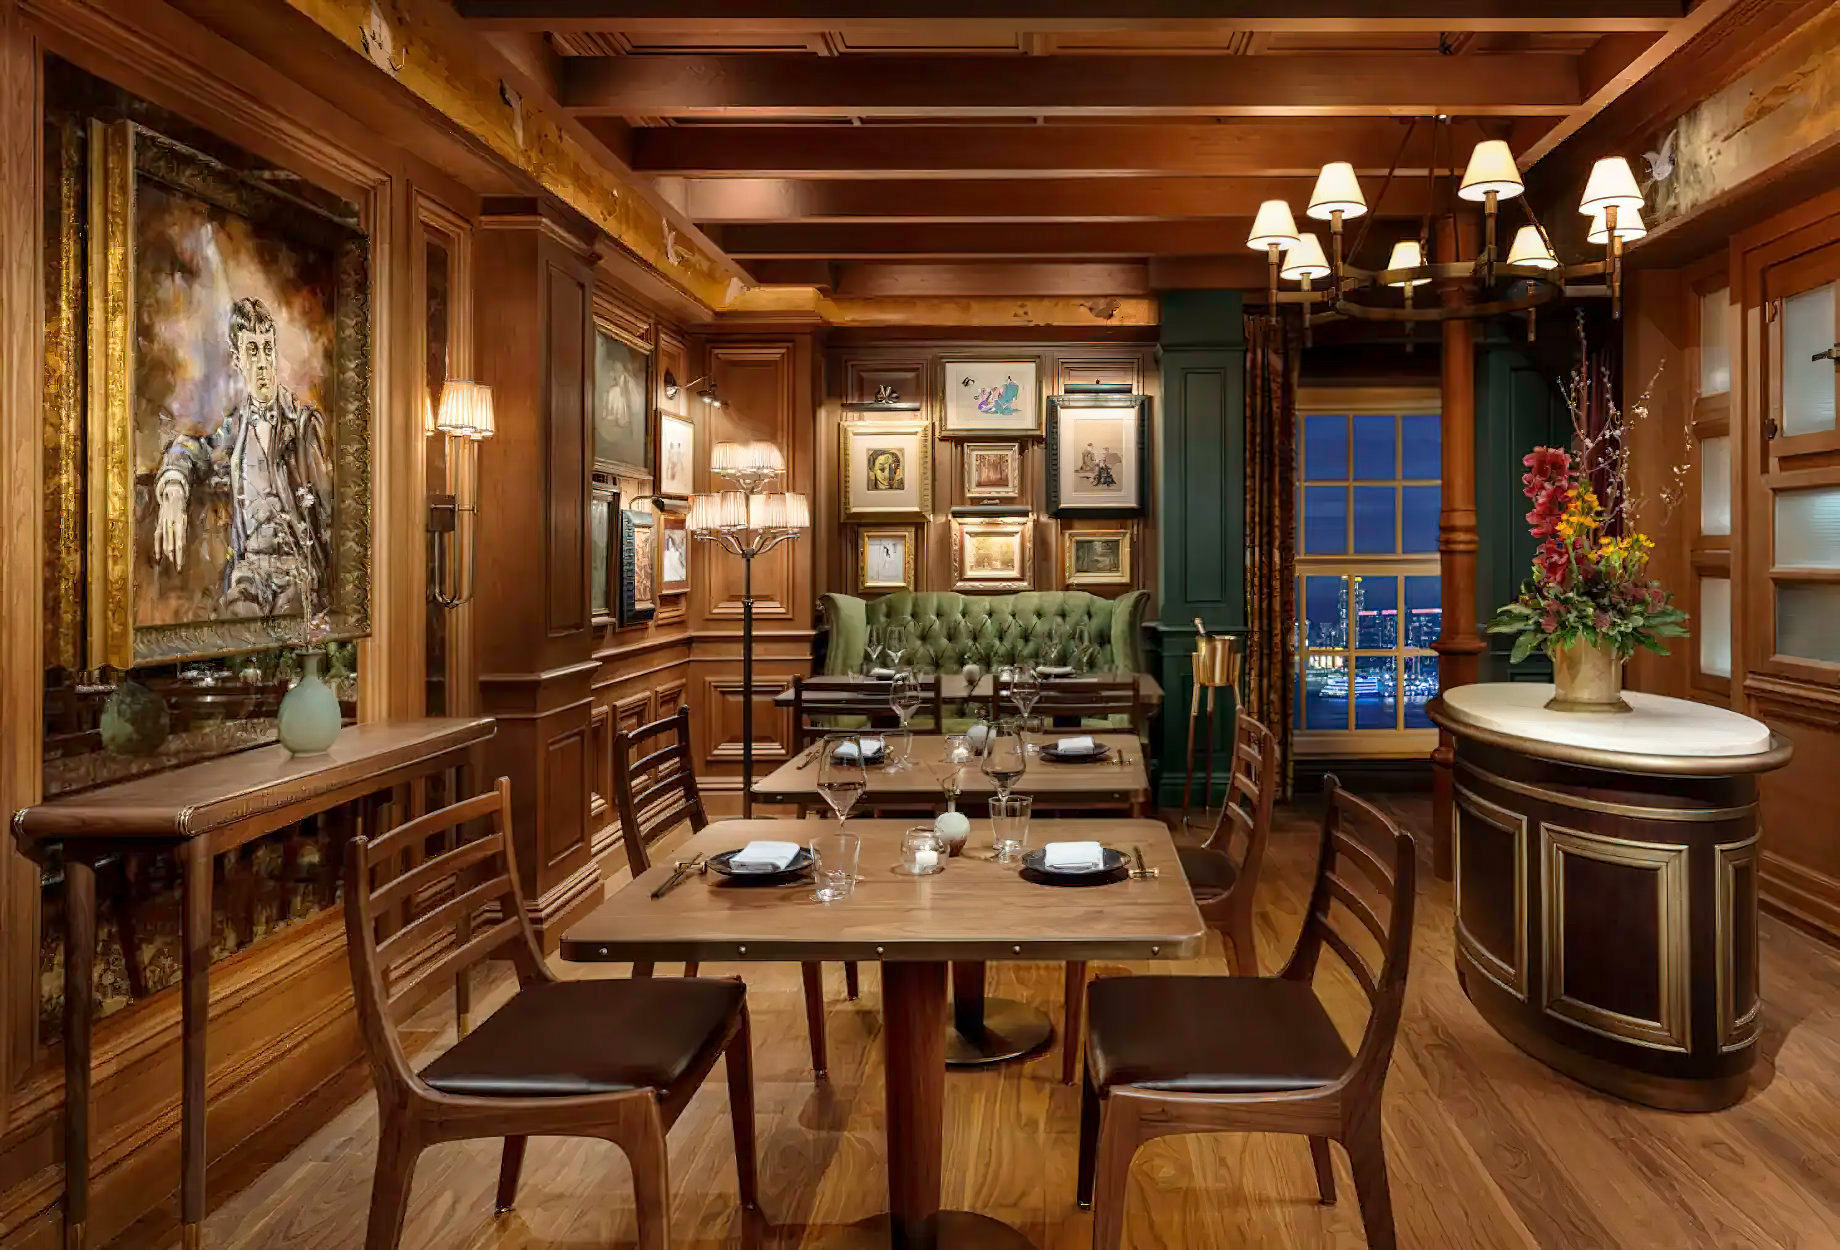 Mandarin Oriental, Hong Kong Hotel – Hong Kong, China – The Aubrey Restaurant Private Dining Room